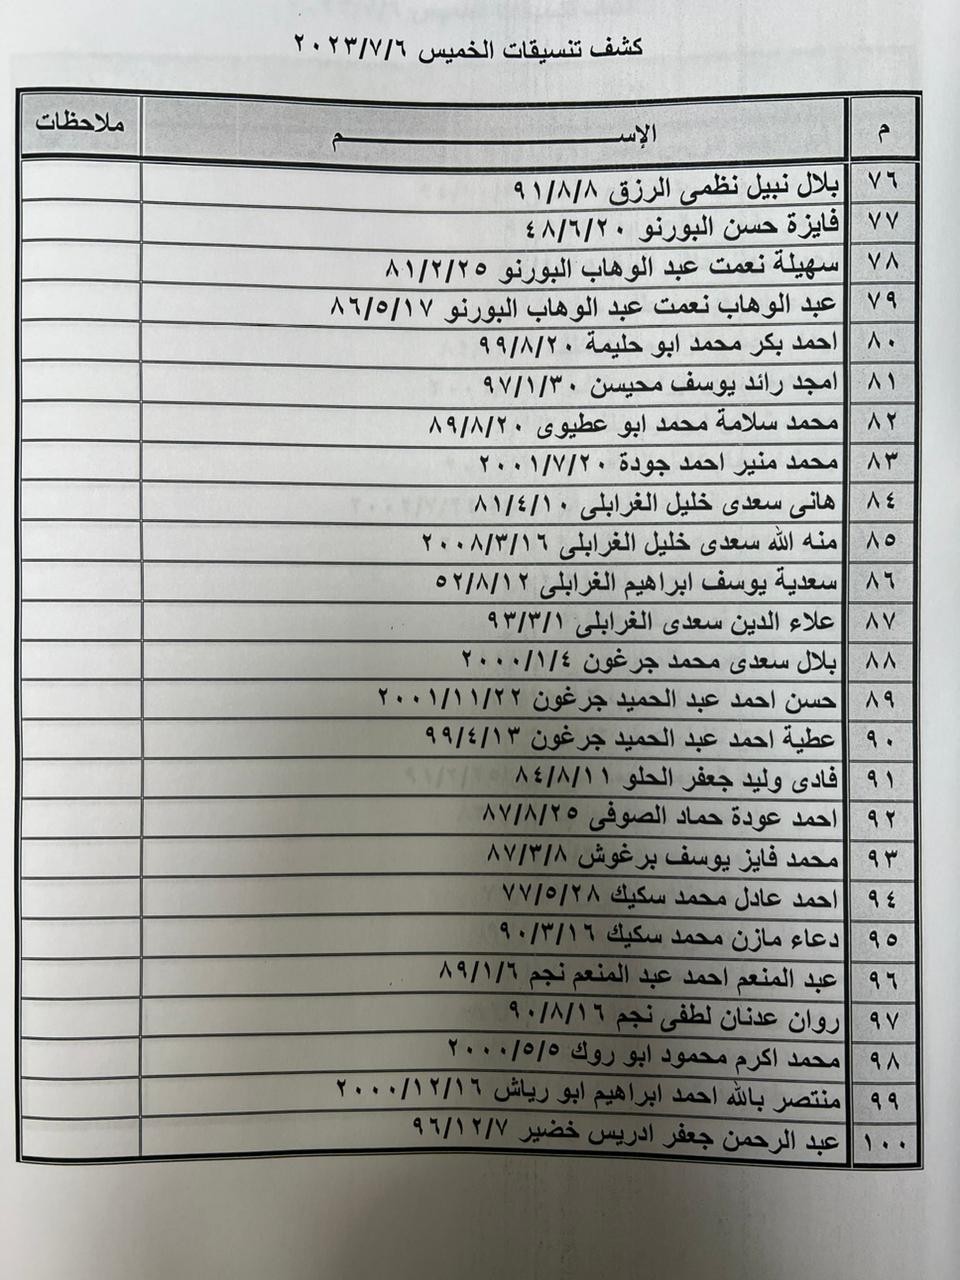 بالأسماء: كشف "تنسيقات مصرية" للسفر عبر معبر رفح الخميس 6 يوليو 2023